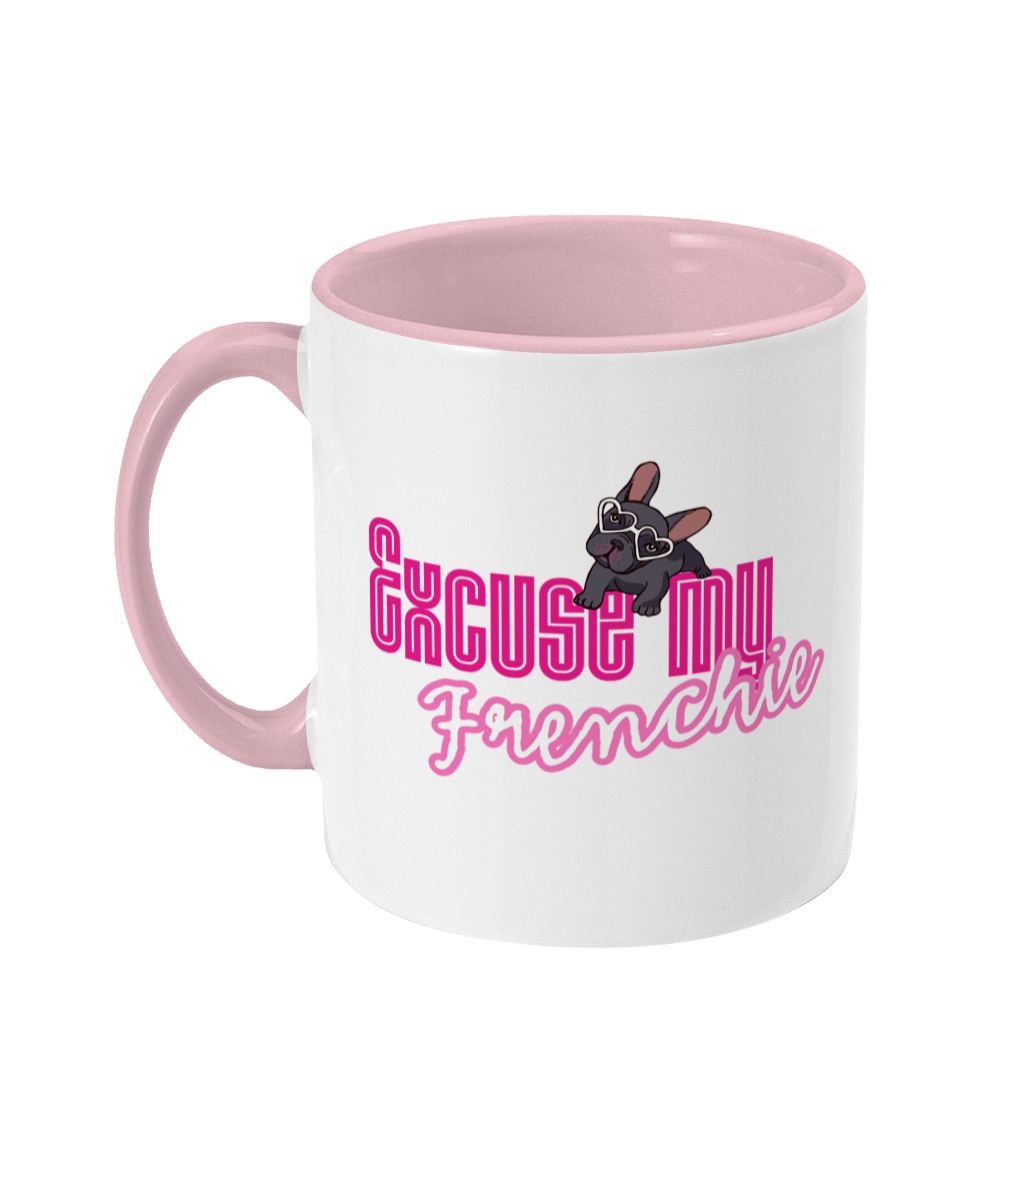 excuse my frenchie pink mug ceramic / white / antique pink